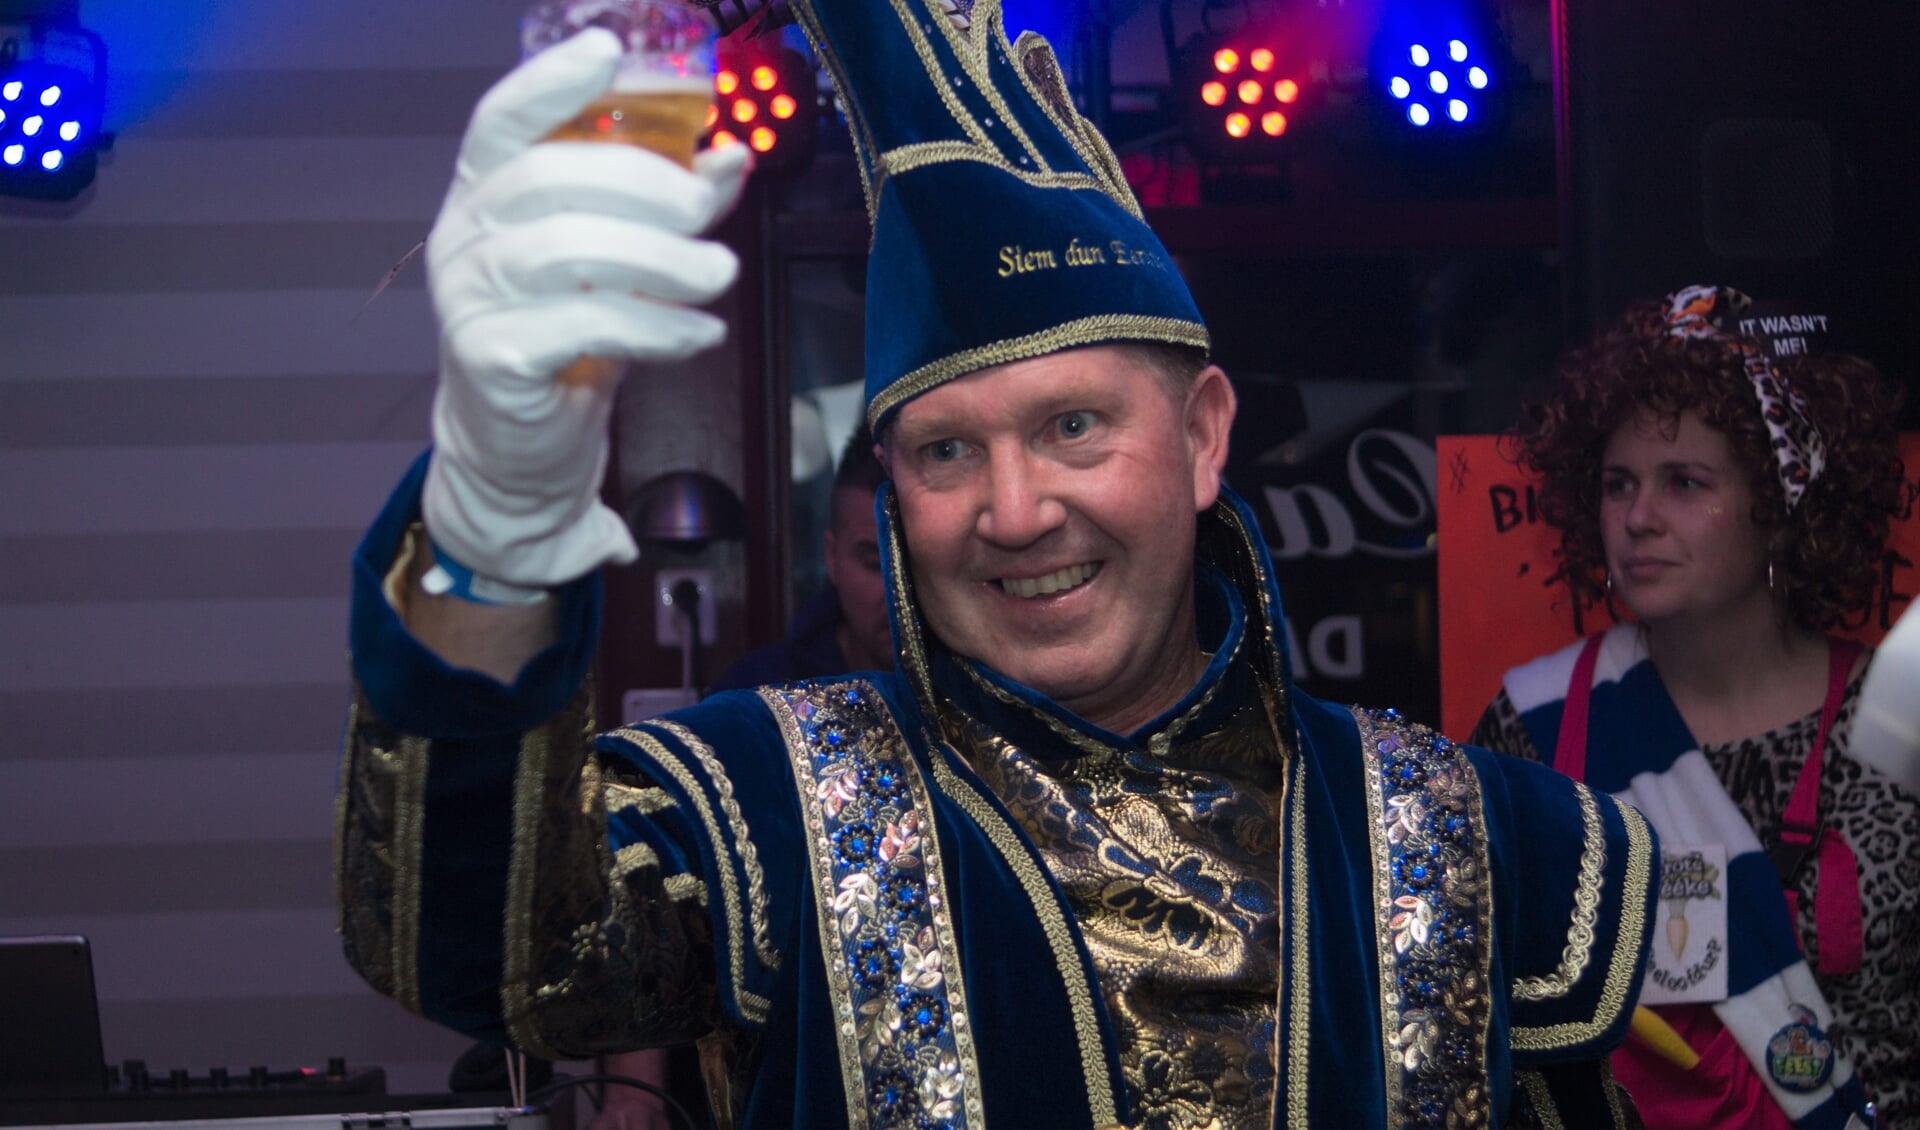 Prins Siem dun Eerste toast op Carnaval 2022.